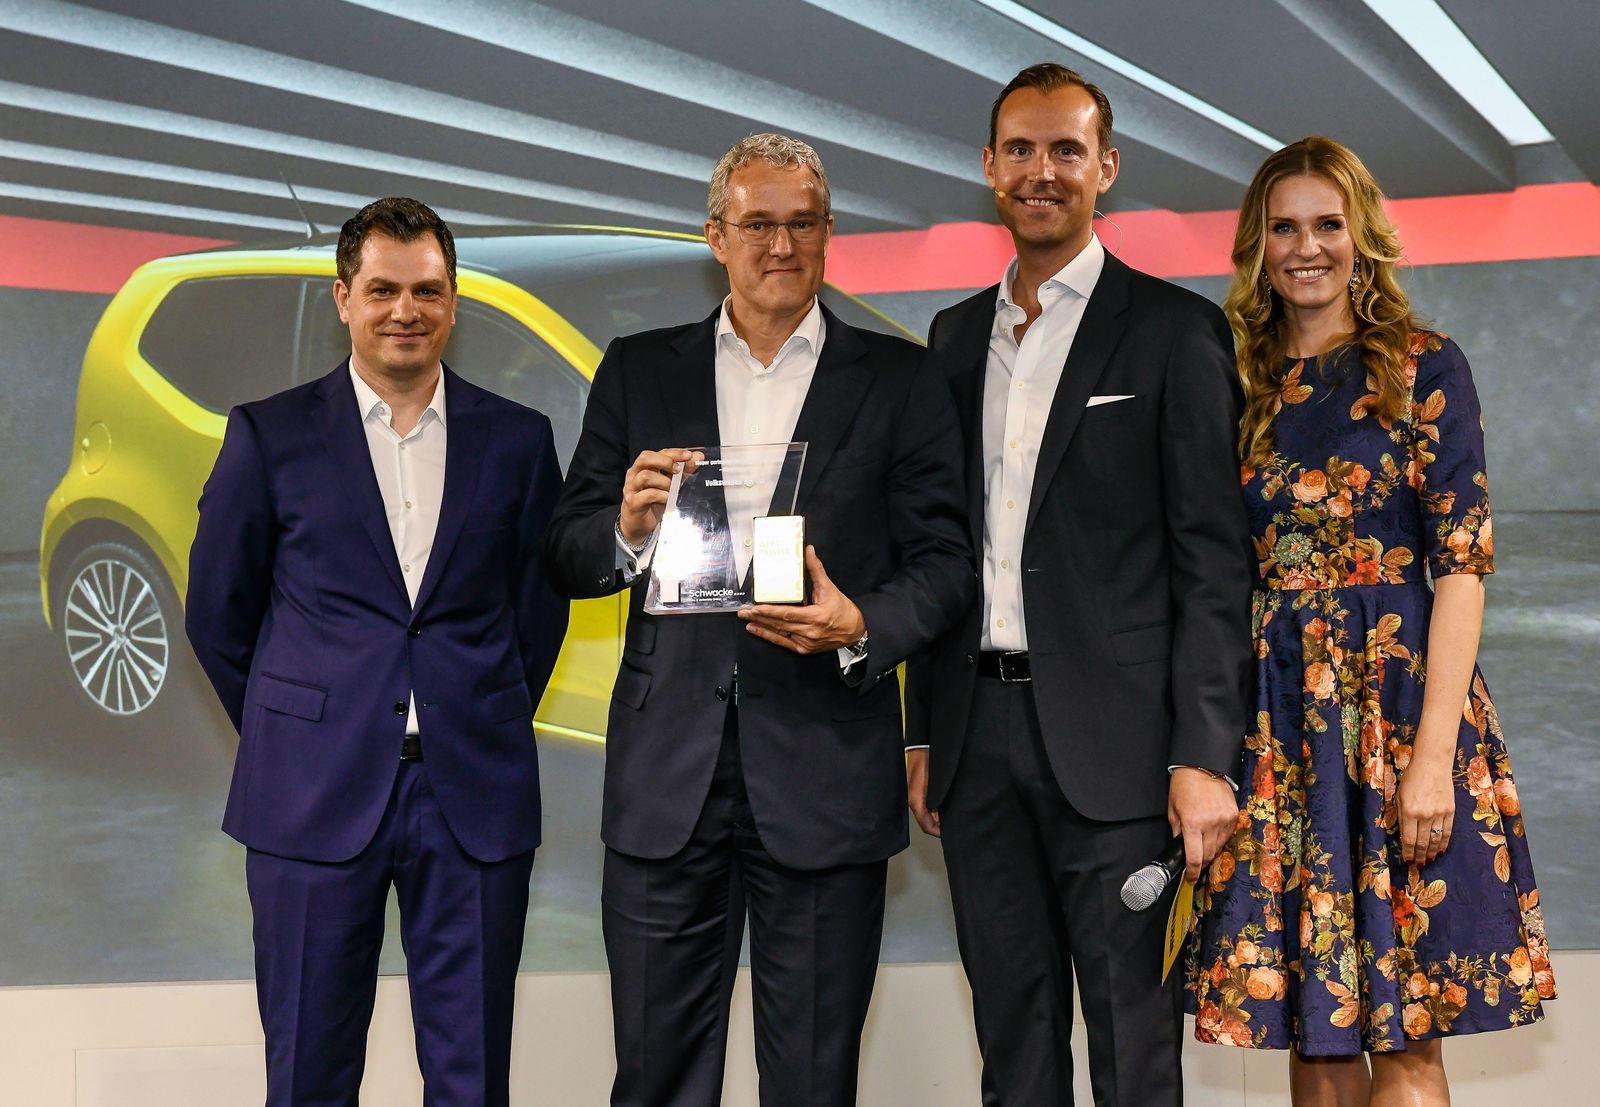 Volkswagen up! receives “Wertmeister 2019” award